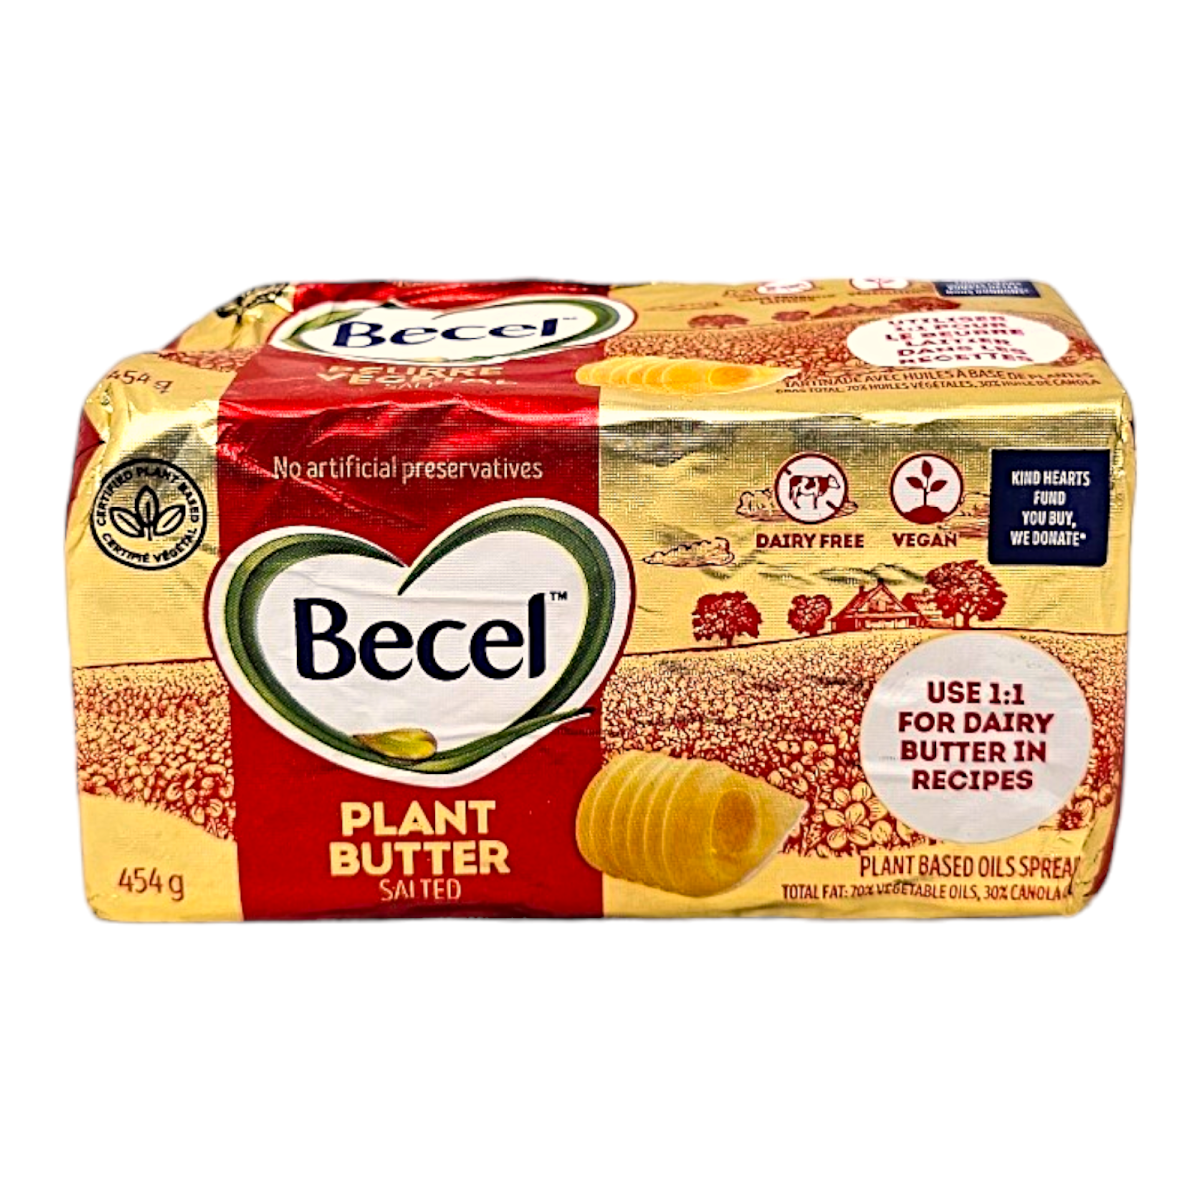 Becel Salted Plant based butter (454g)